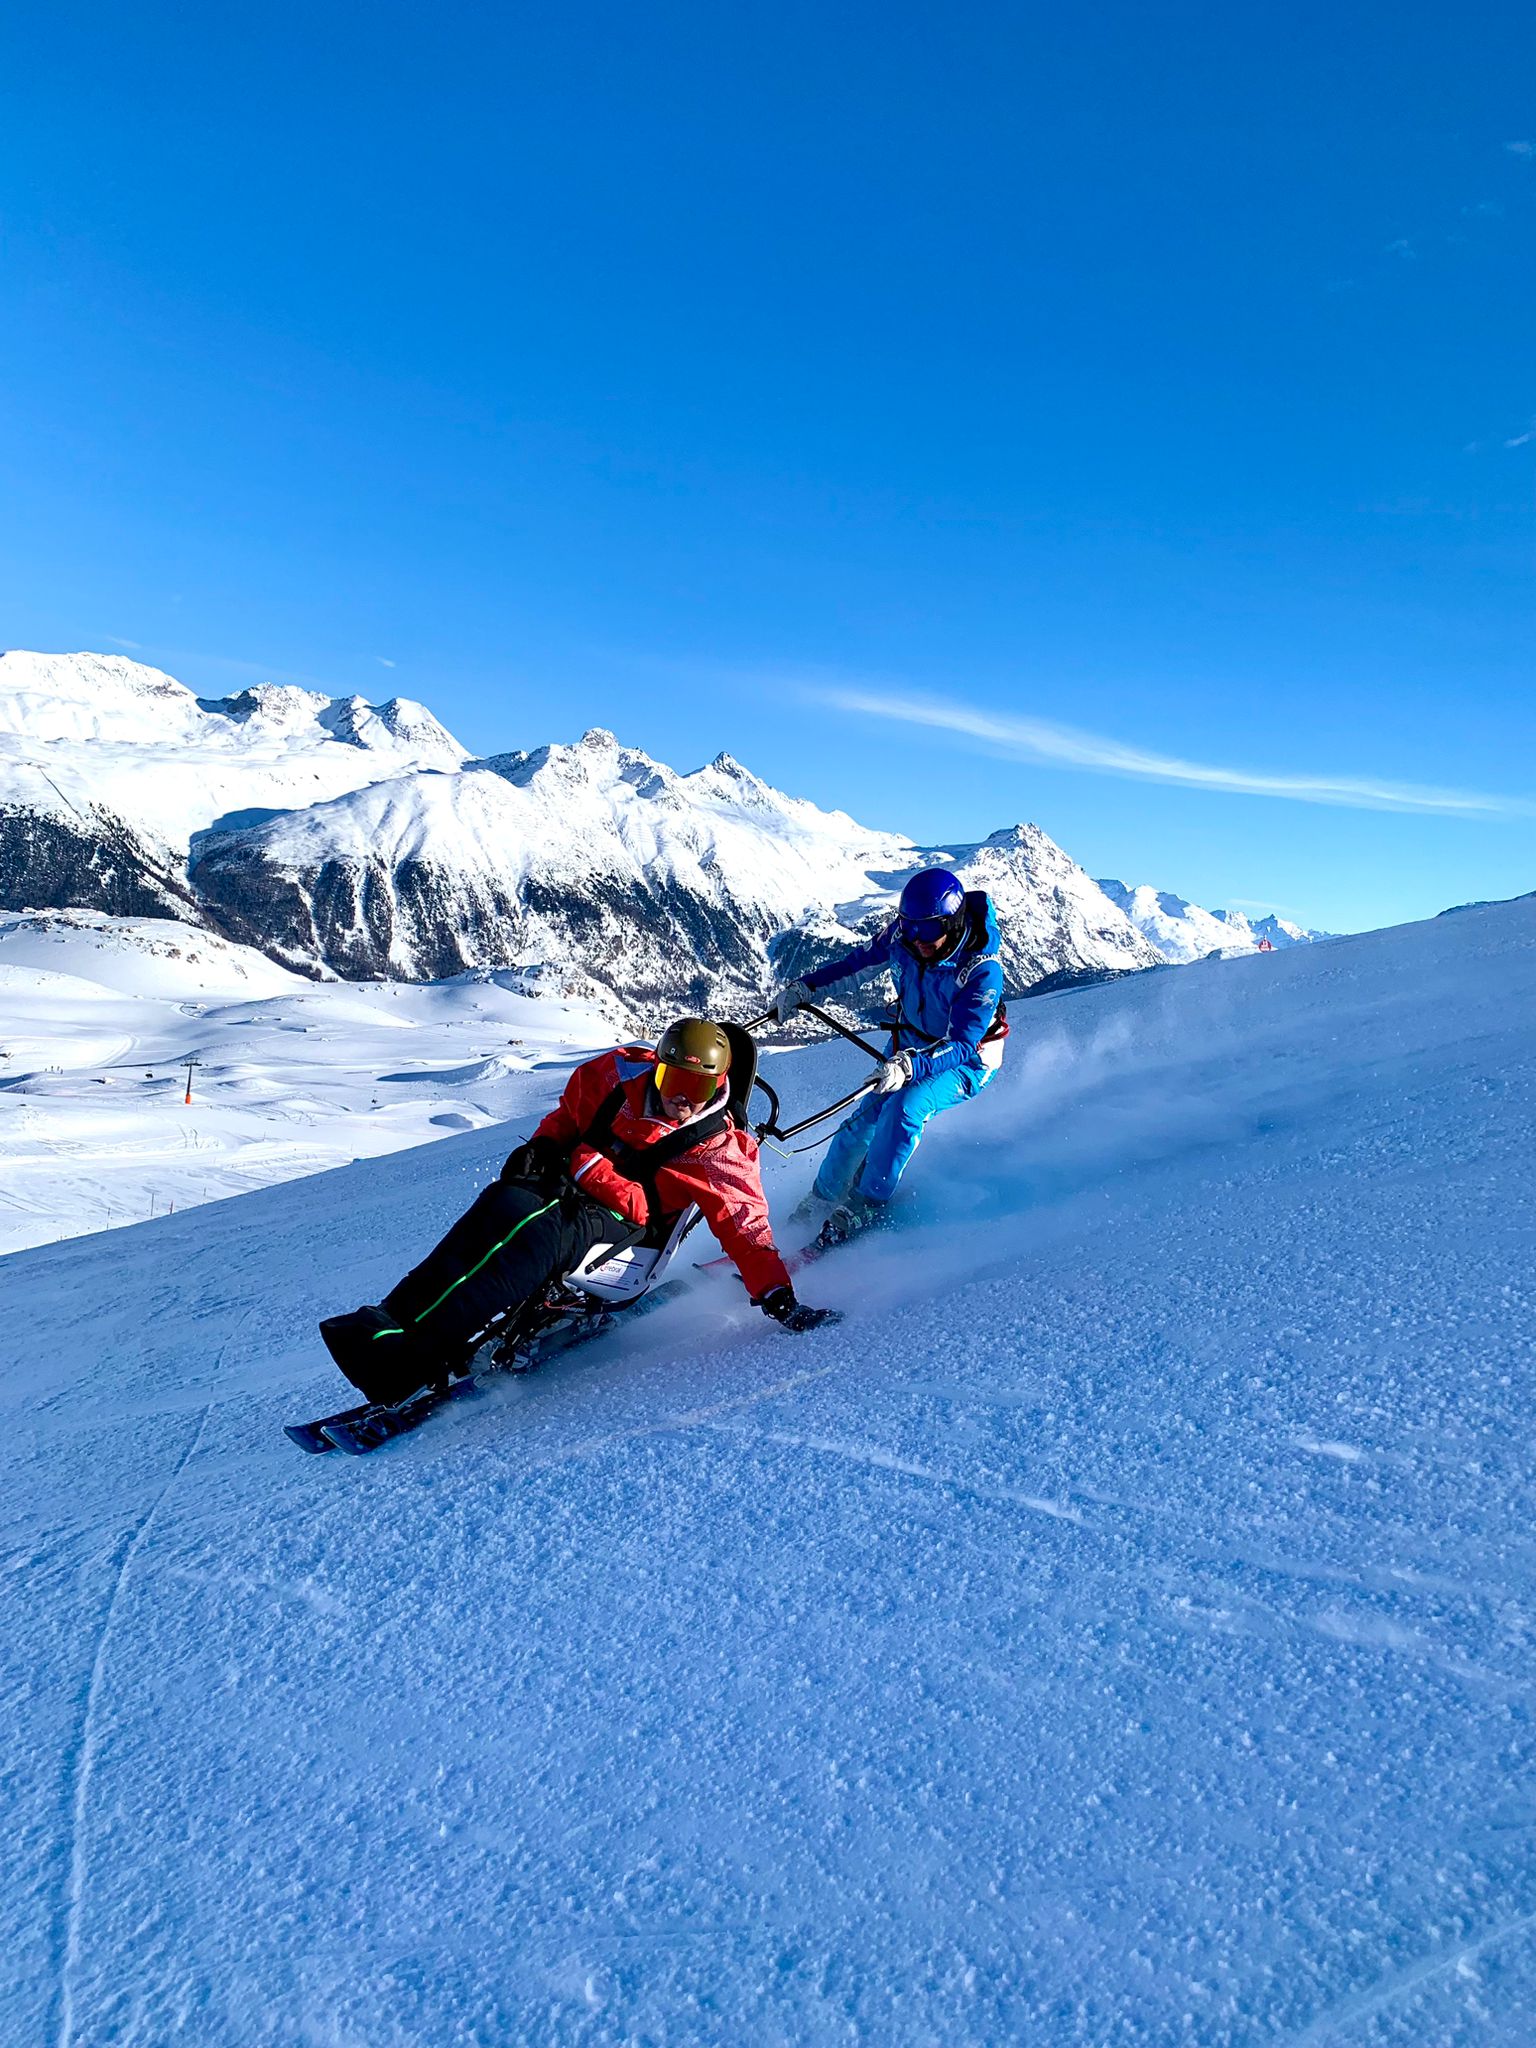 Schülerin mit Monoski und Skilehrperson auf der Piste. Im Hintergrund ist ein beeindruckendes Bergpanorama zu sehen.